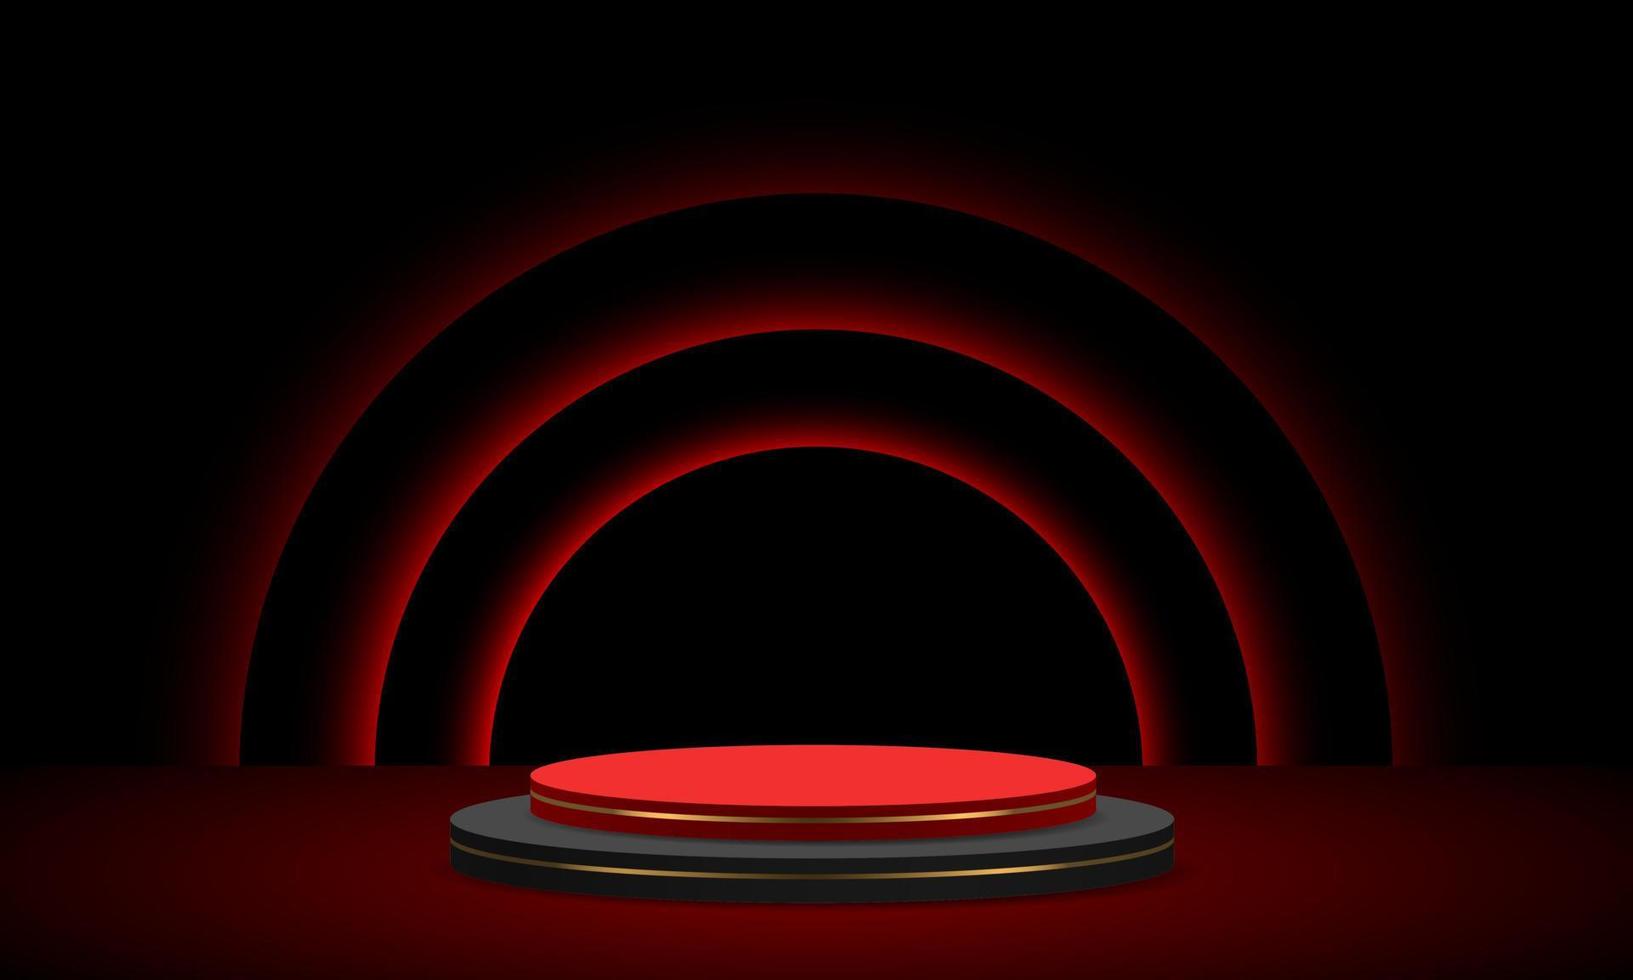 réaliste luxe rouge noir cercle podium pas doux lumière courbes vecteur